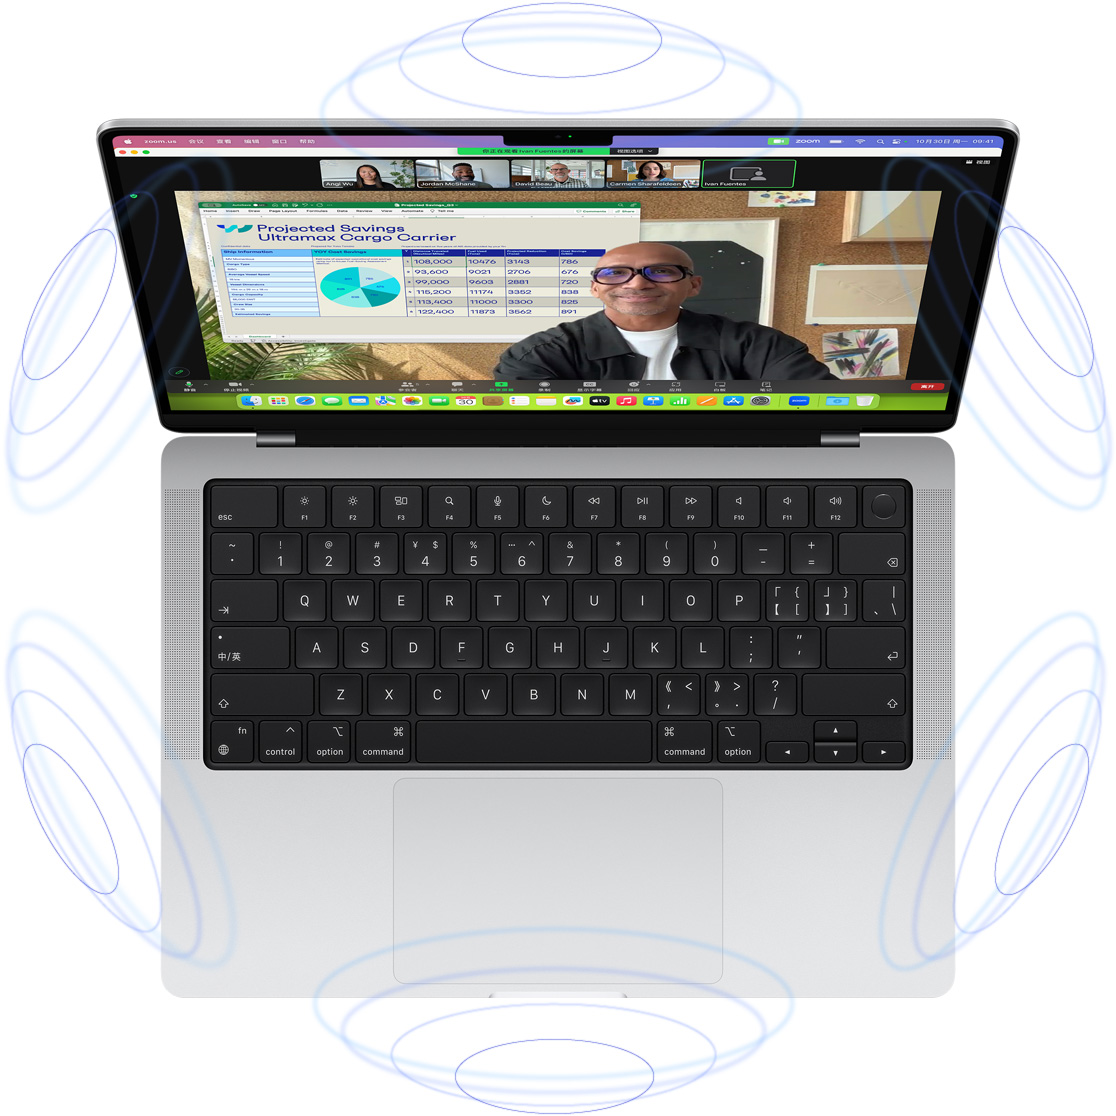 数个蓝色圆圈围绕正在进行 FaceTime 视频通话的 MacBook Pro，体现空间音频的 3D 效果